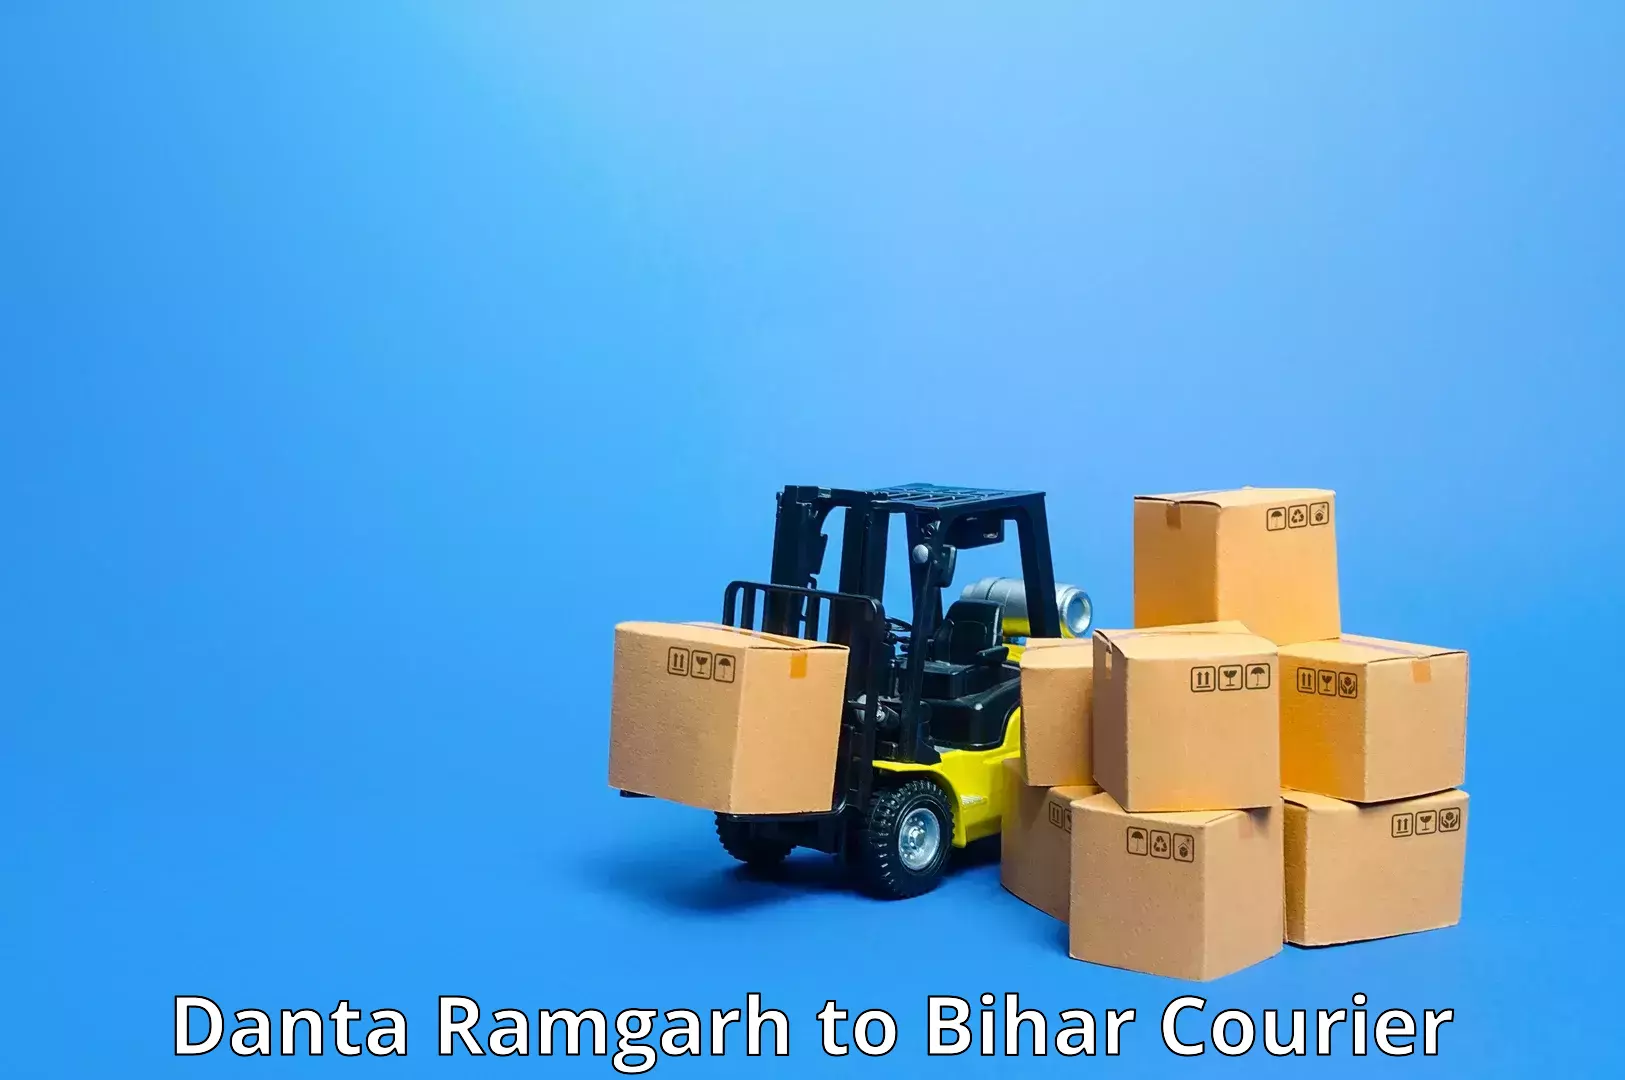 Urgent courier needs Danta Ramgarh to Bhorey